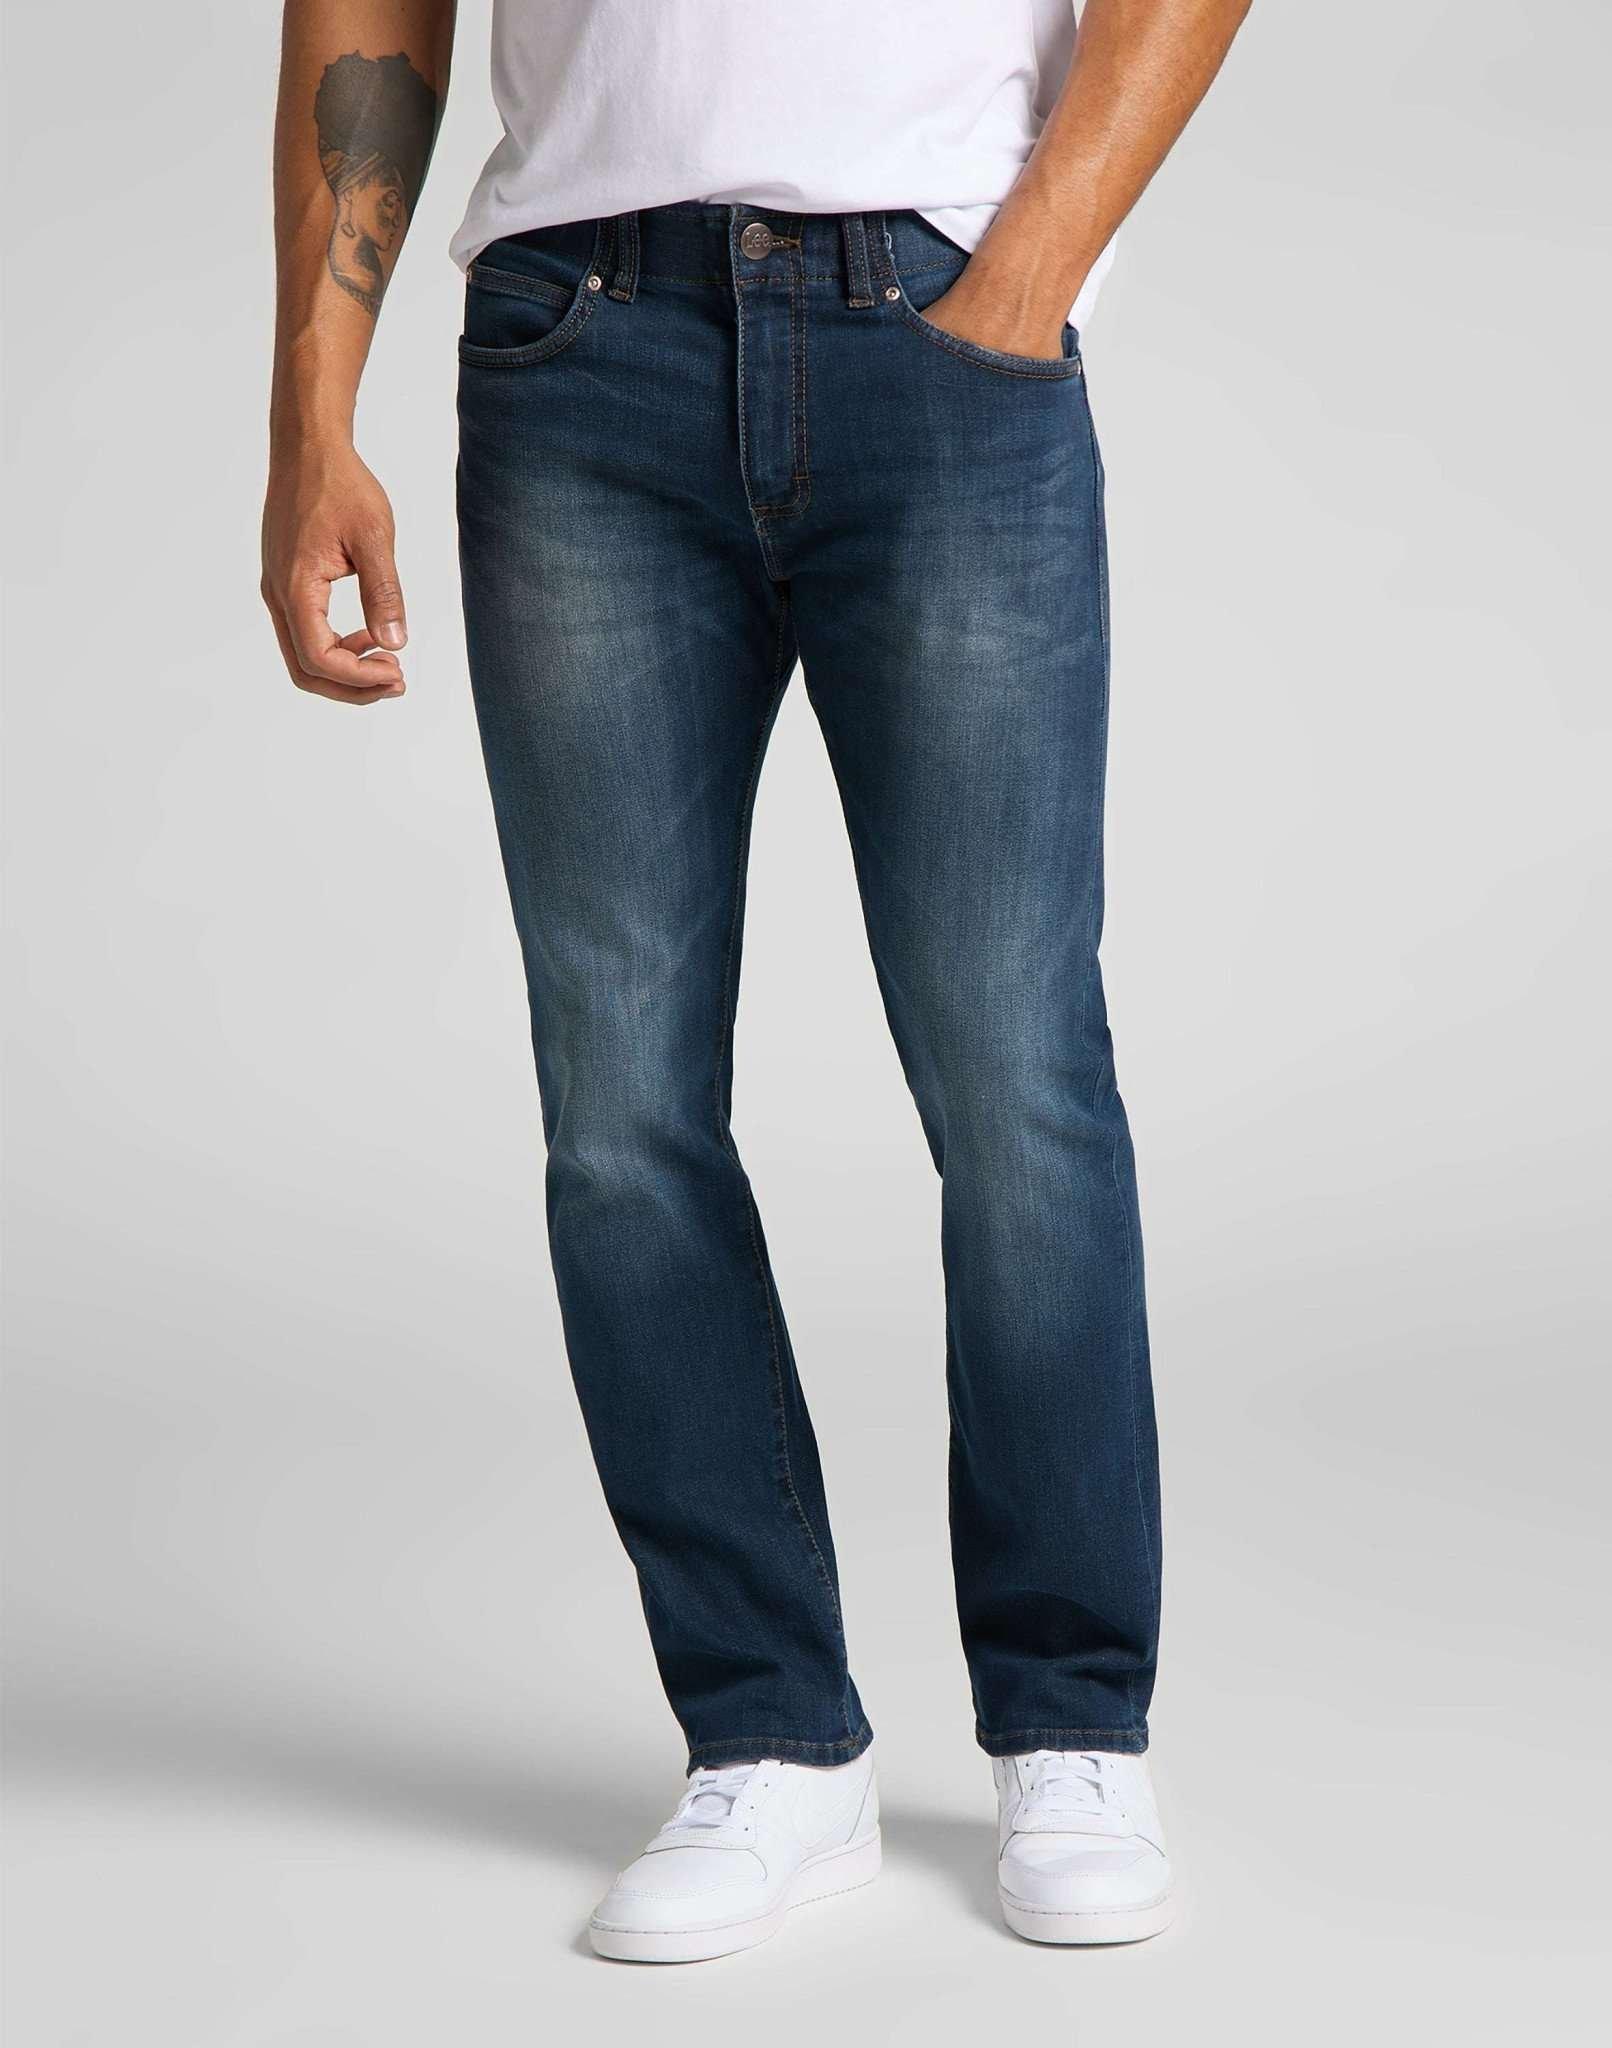 Jeans Slim Fit Mvp Herren Blau Denim L30/W36 von Lee